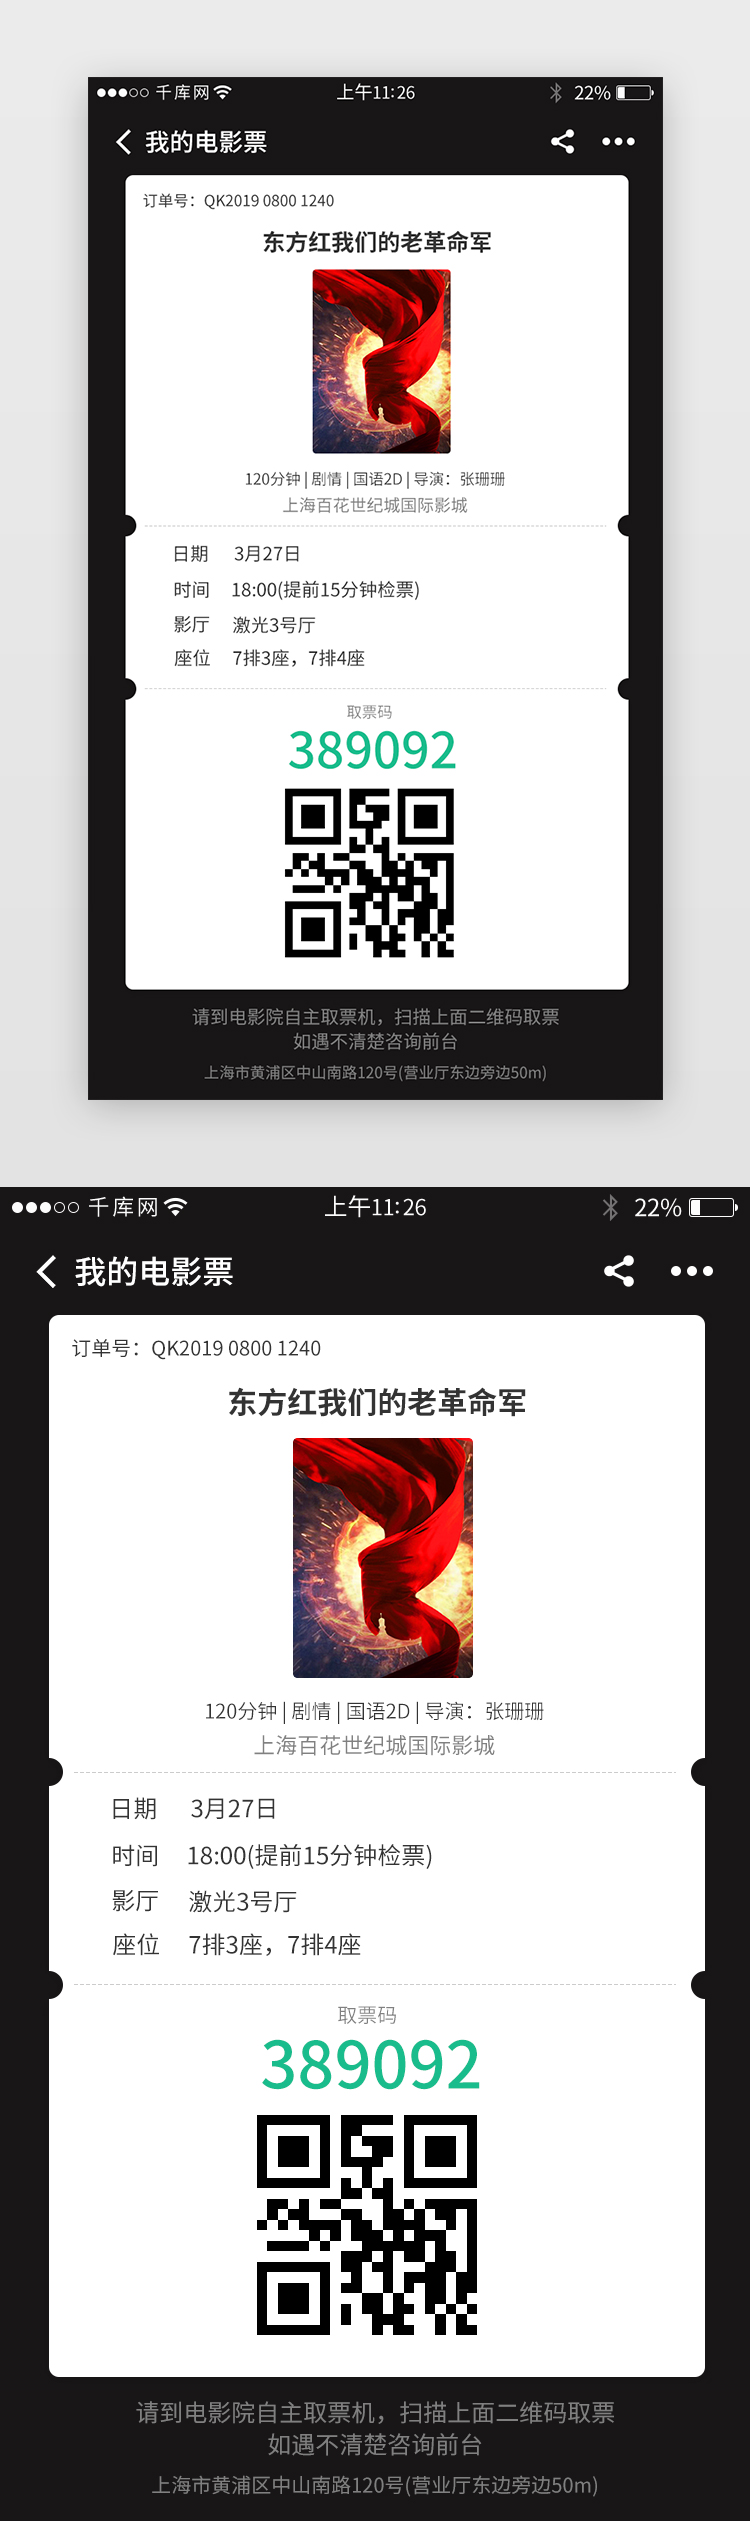 电影票务app界面设计图片